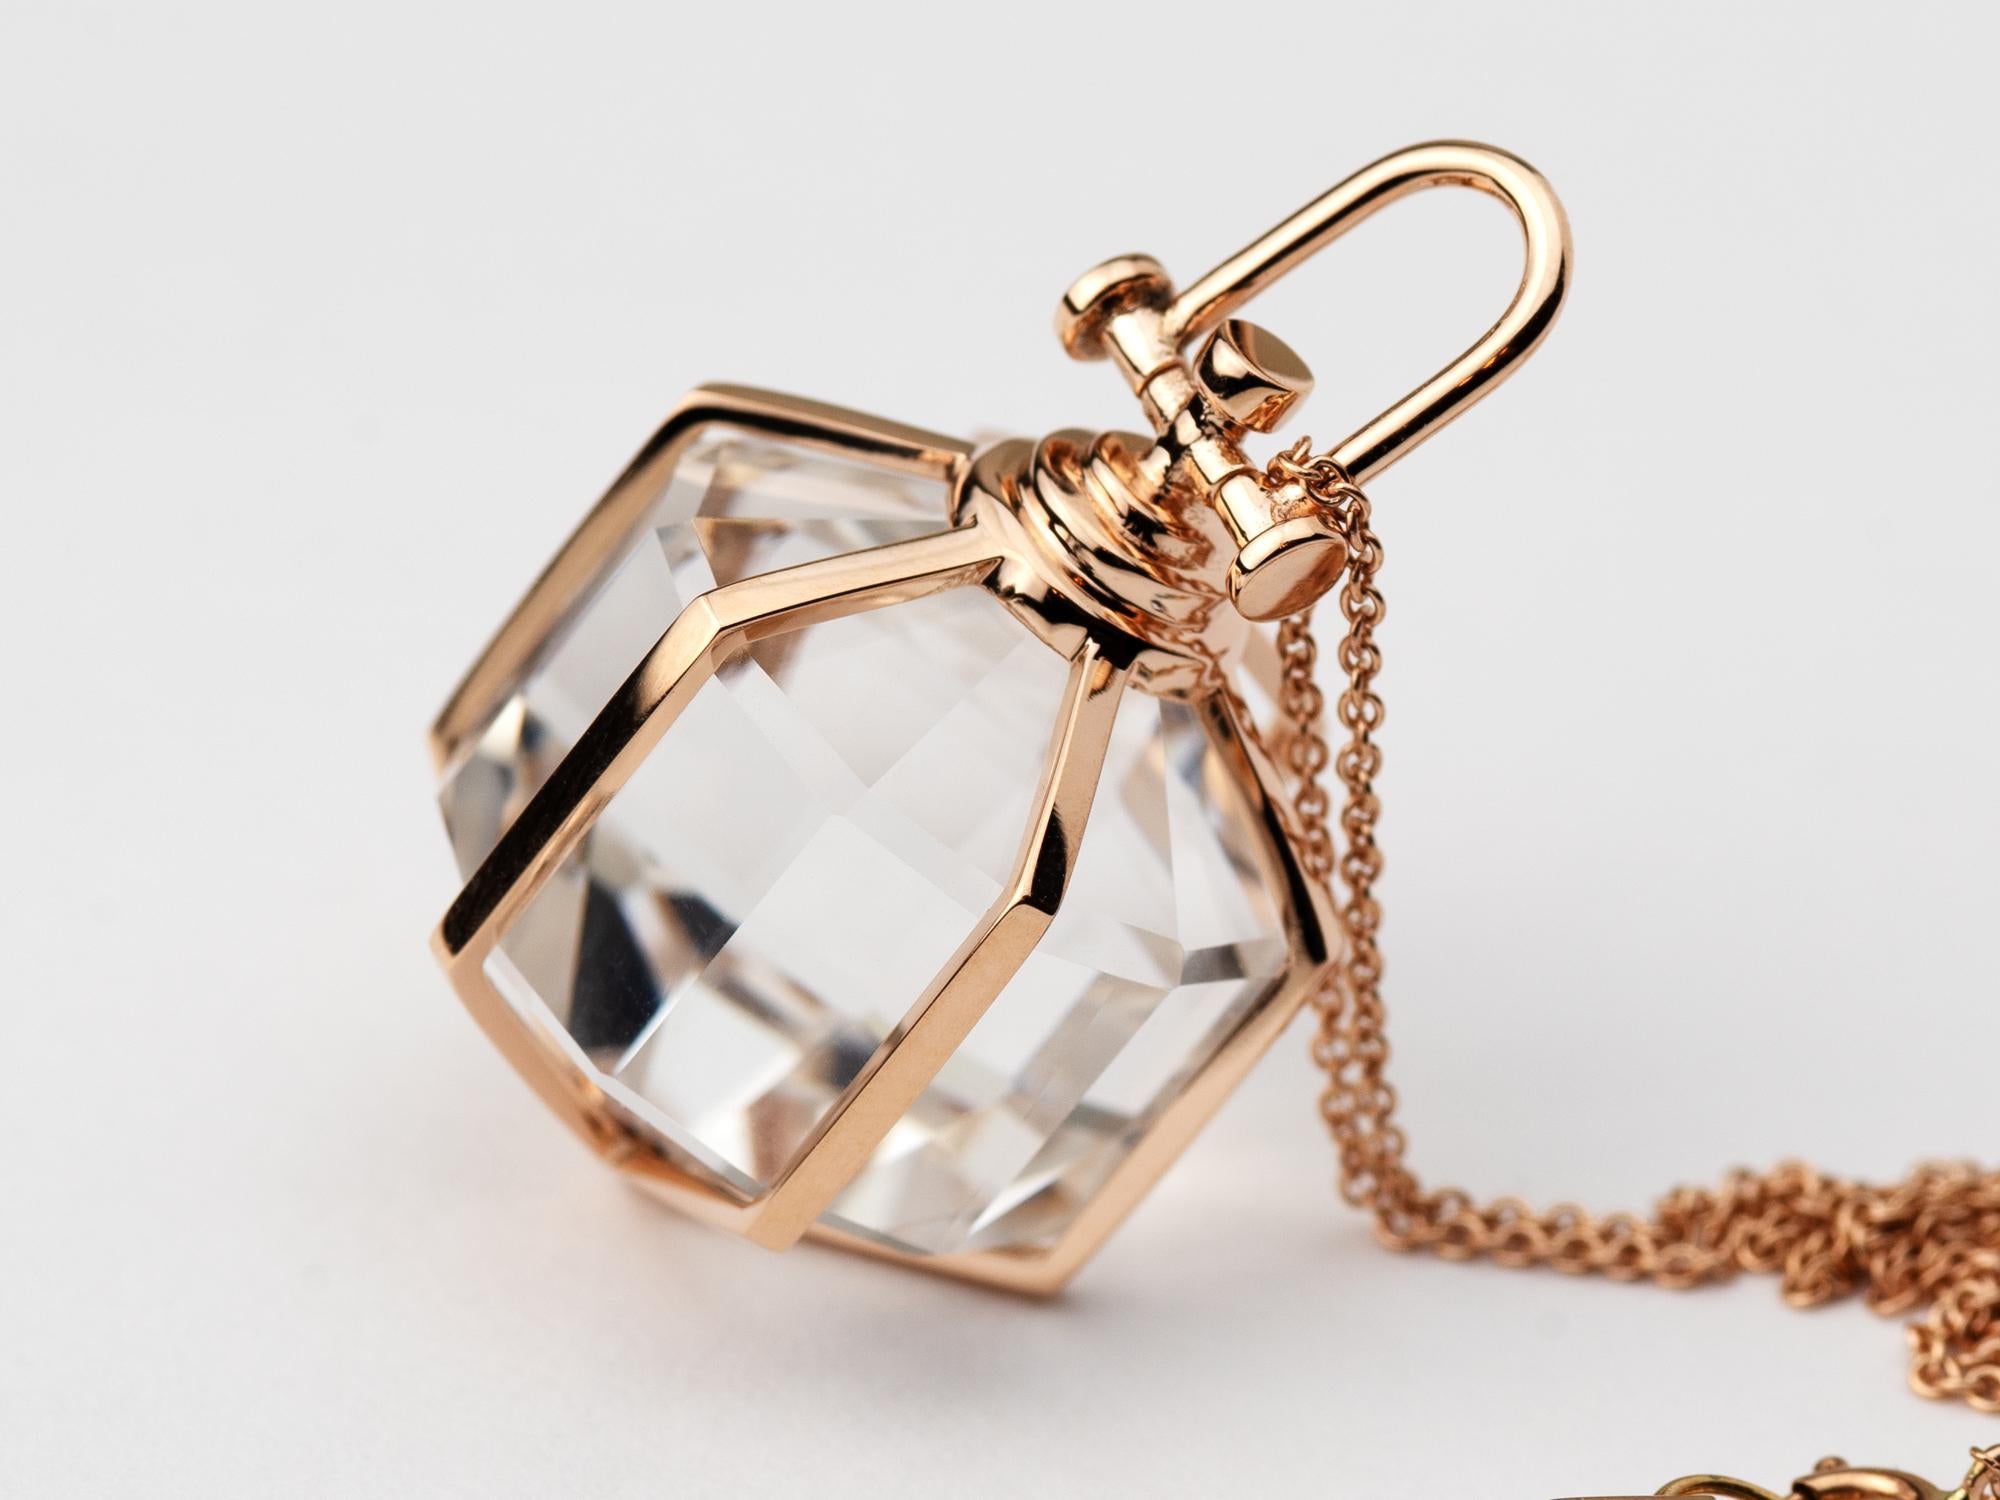 Retro Rebecca Li Six Senses Talisman Necklace 18 Karat Gold Large Natural Rock Crystal